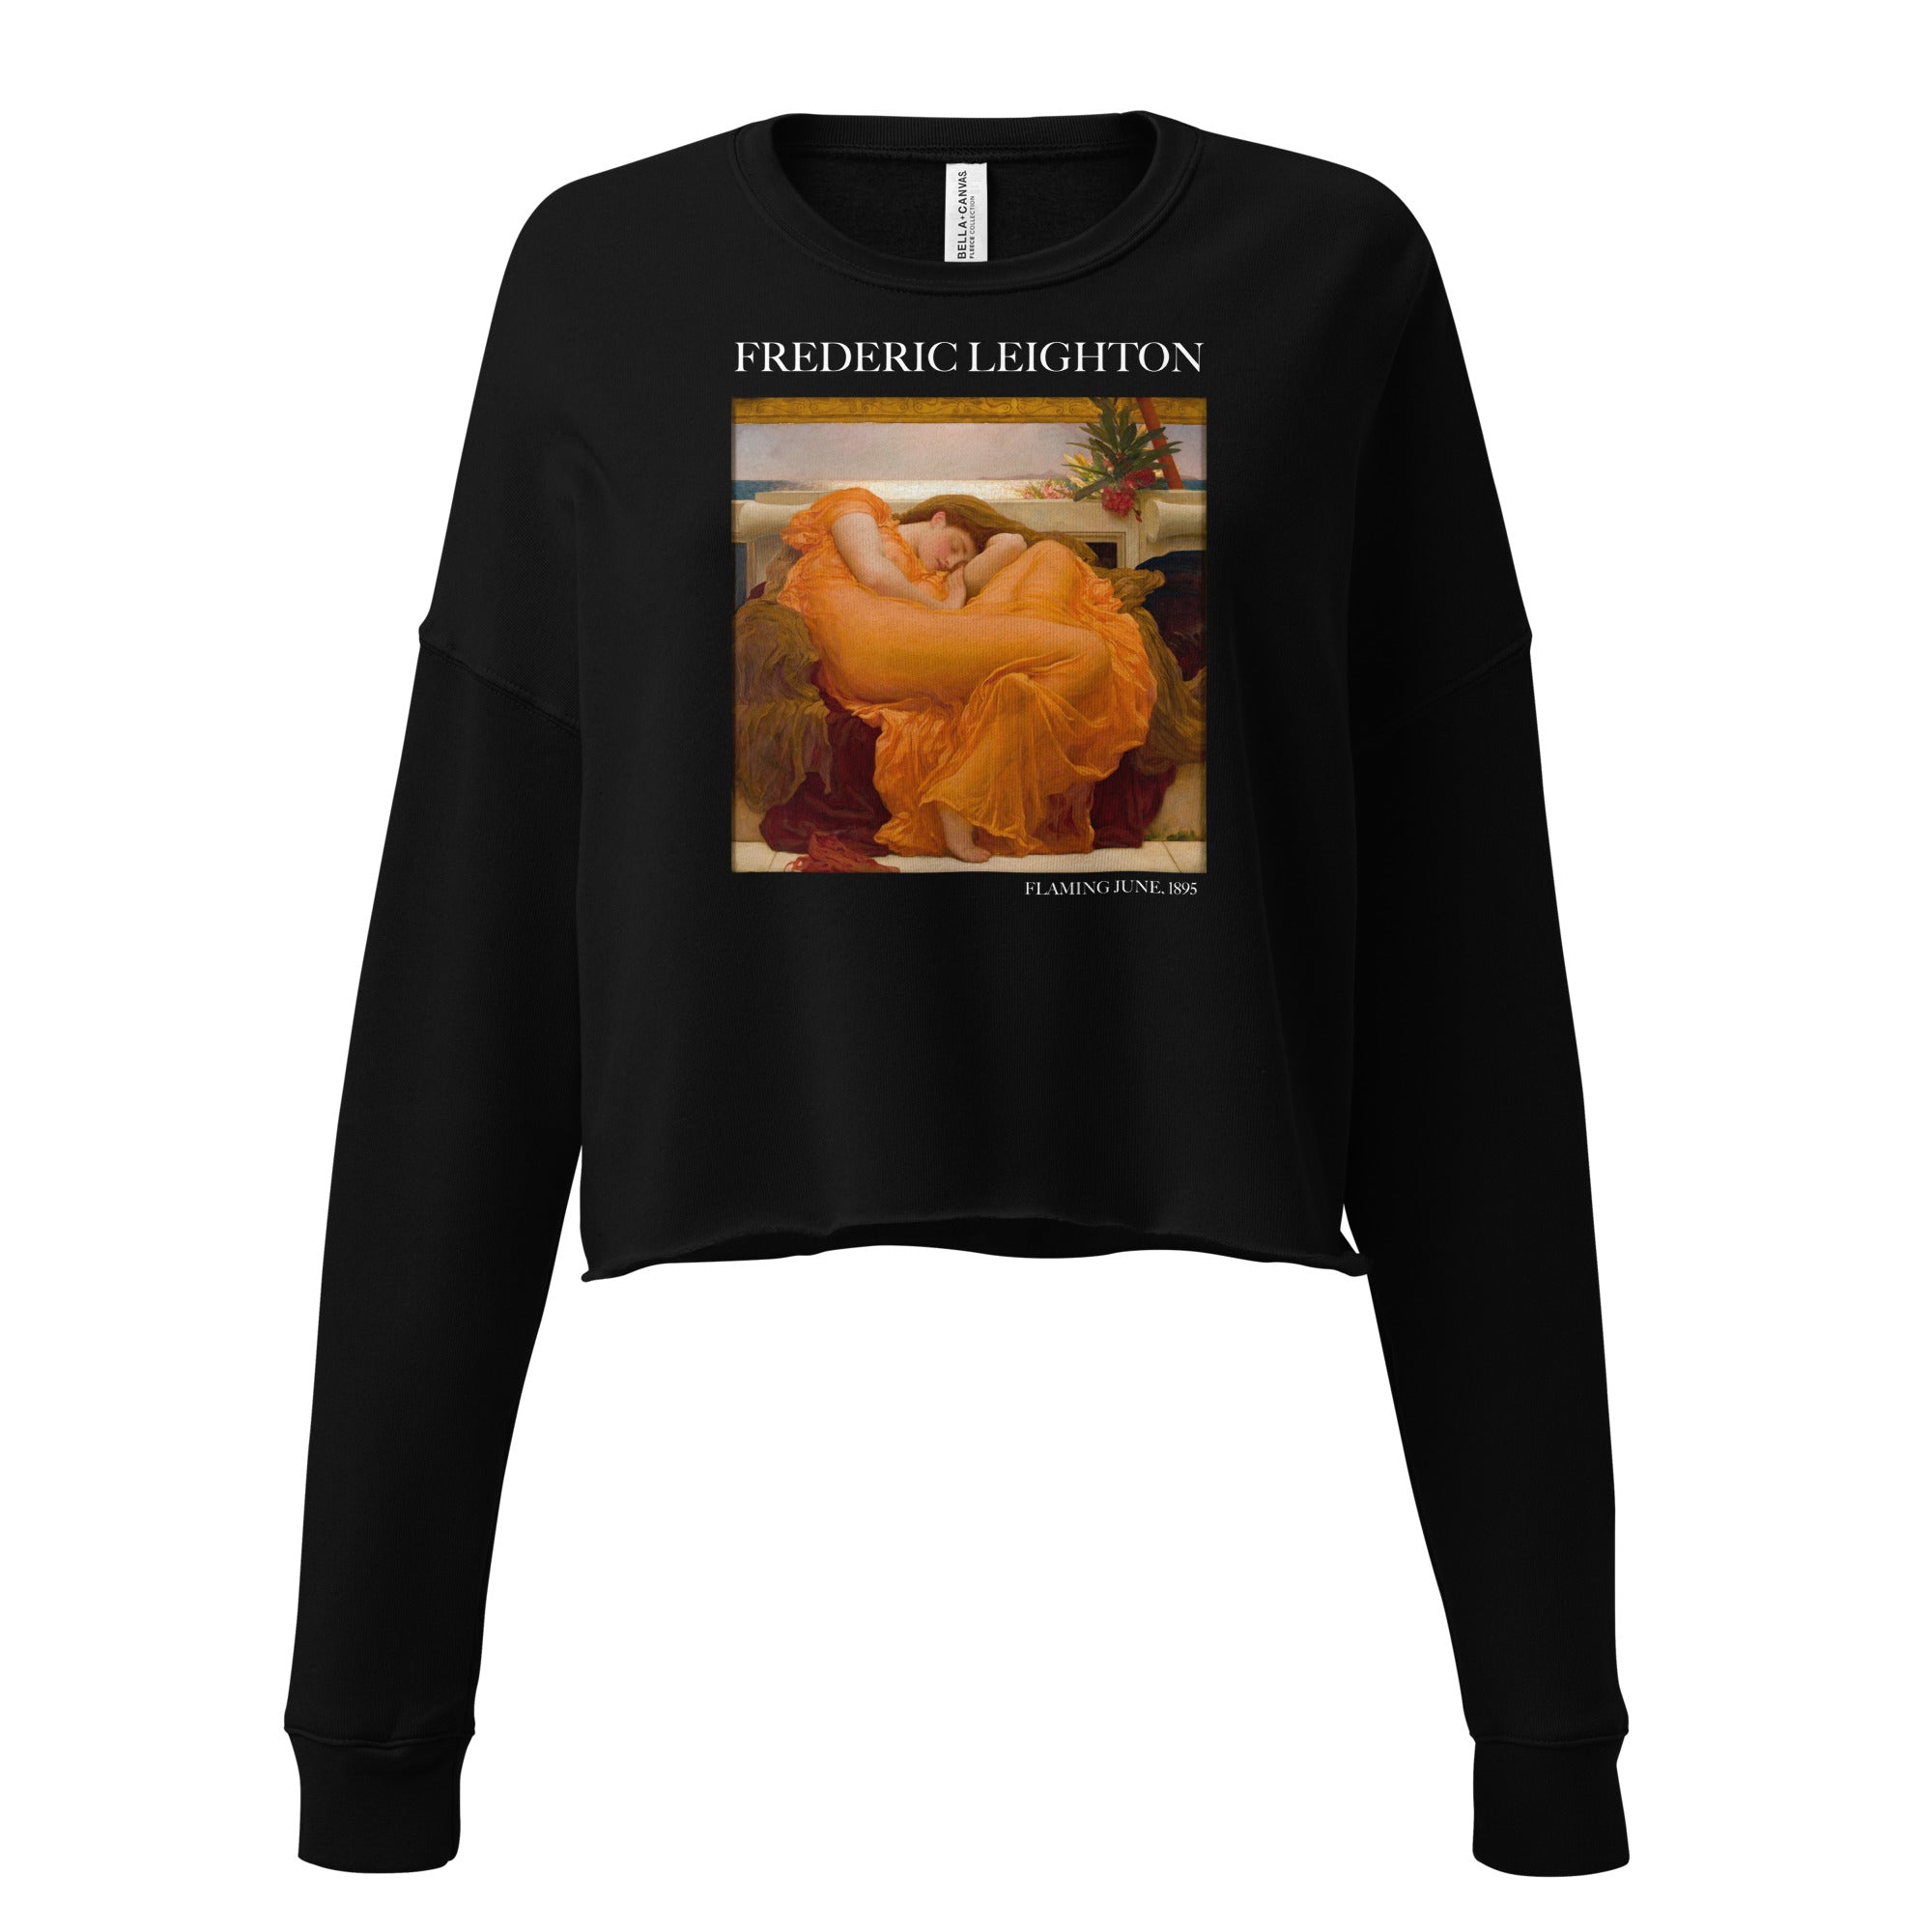 Kurzes Sweatshirt mit berühmtem Gemälde „Flaming June“ von Frederic Leighton | Kurzes Sweatshirt mit Premium-Kunstmotiv